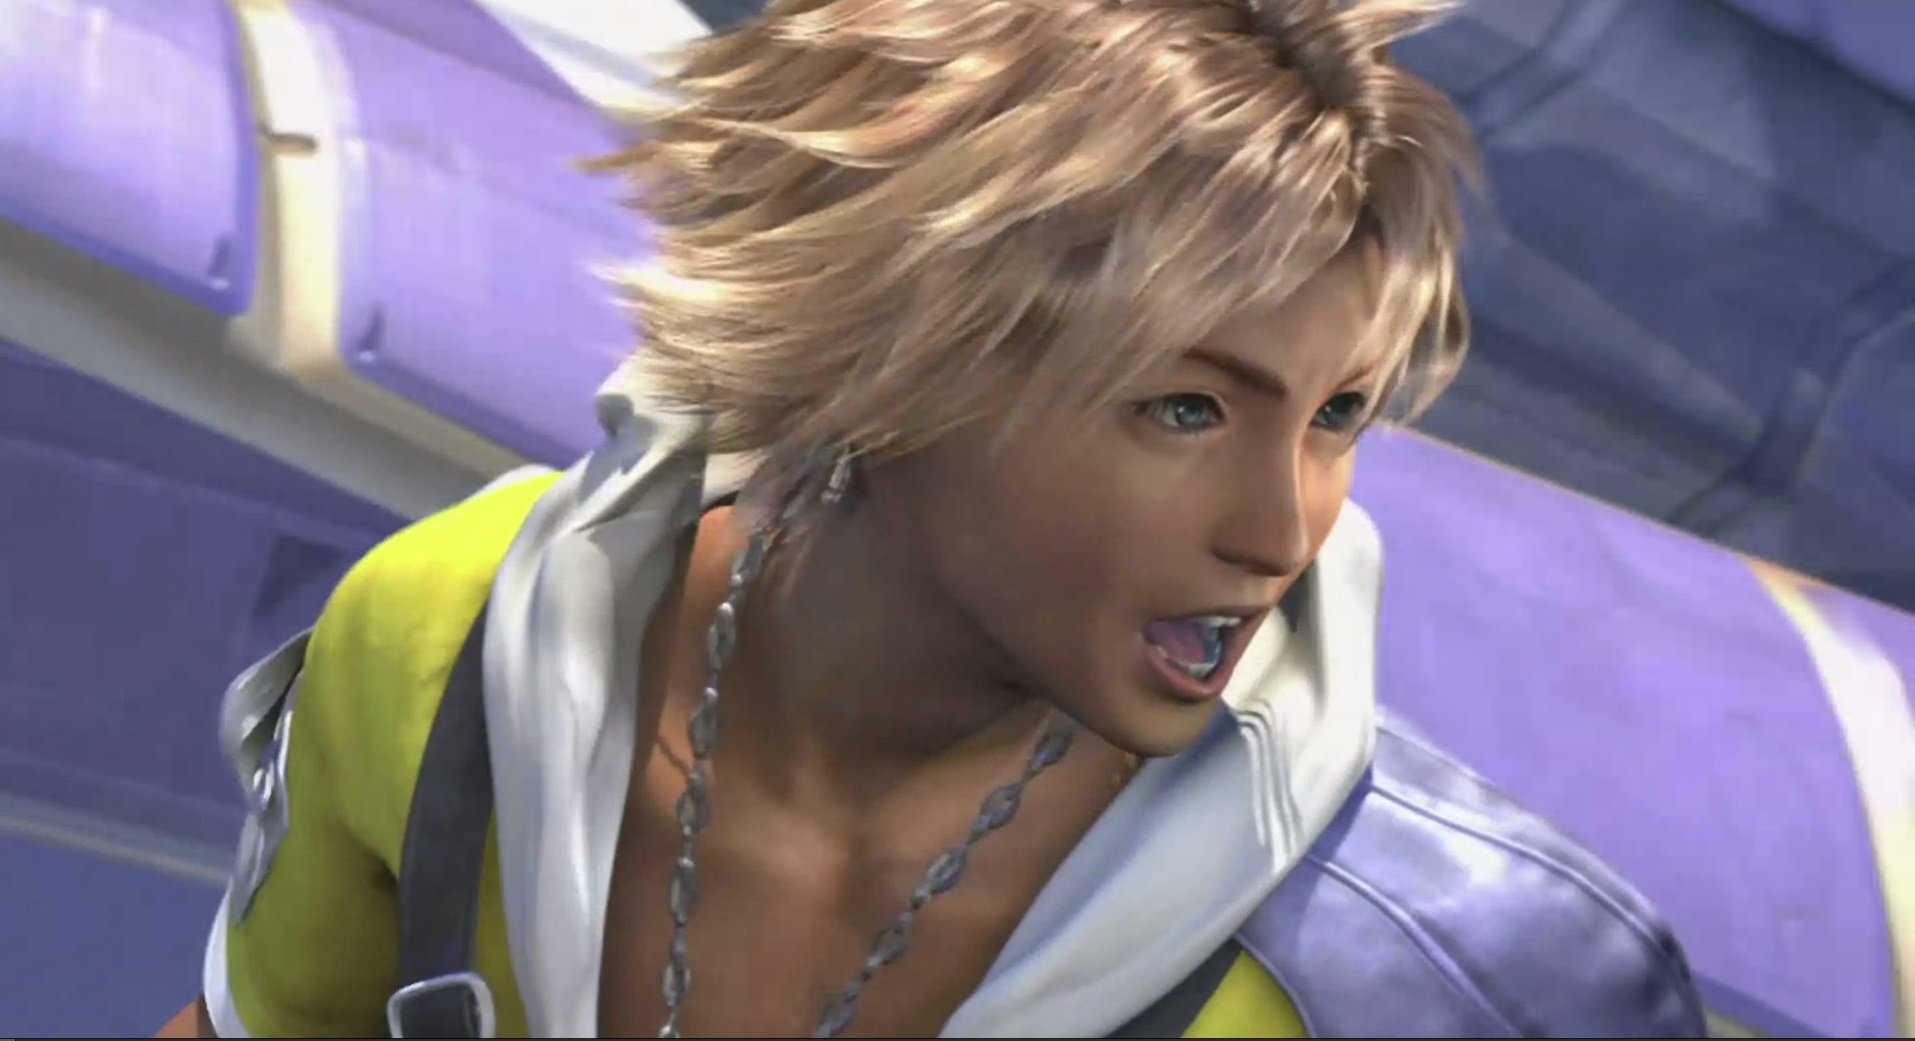 Produção de Final Fantasy X revela que Tidus foi criado inicialmente para  ser um canalizador